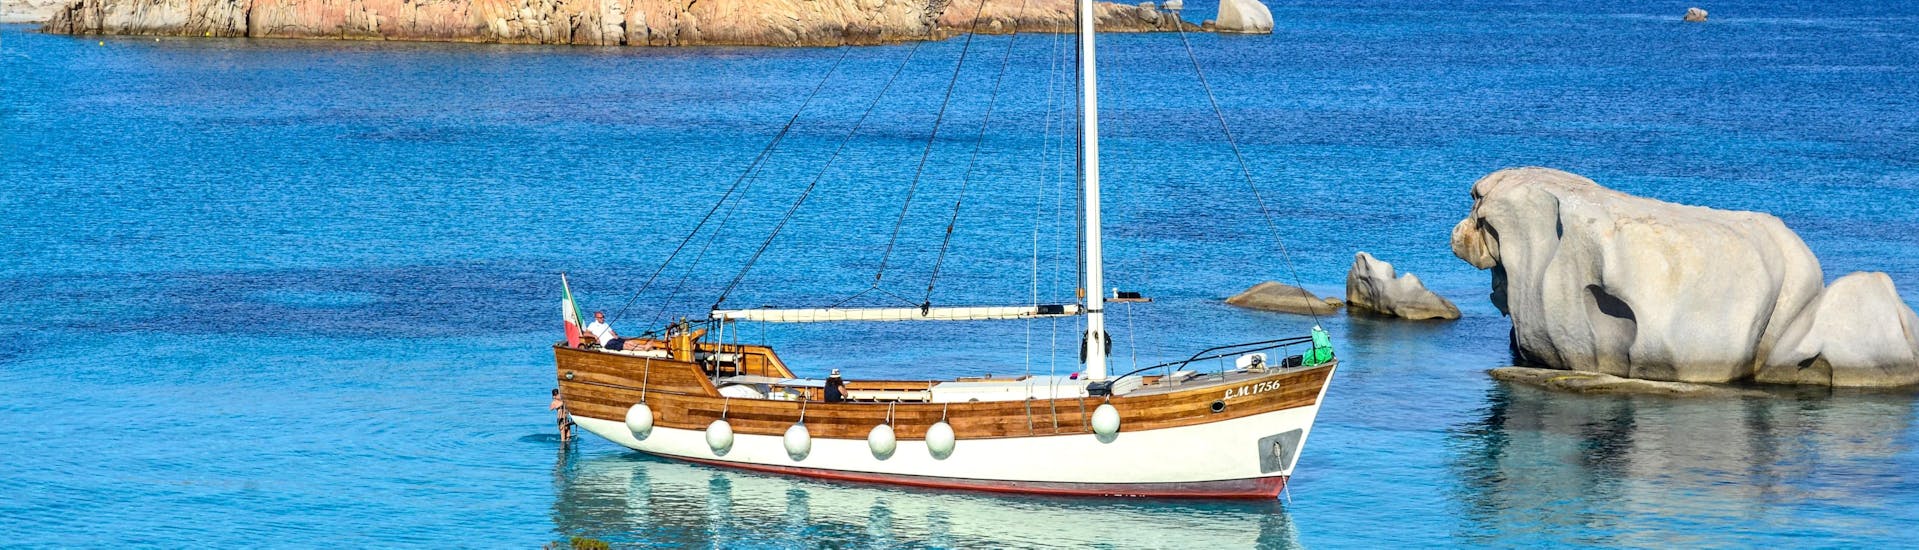 Nuestro exclusivo velero navegando durante el tour en velero semiprivado, al Archipiélago de la Maddalena, con Maggior Leggero Tour.